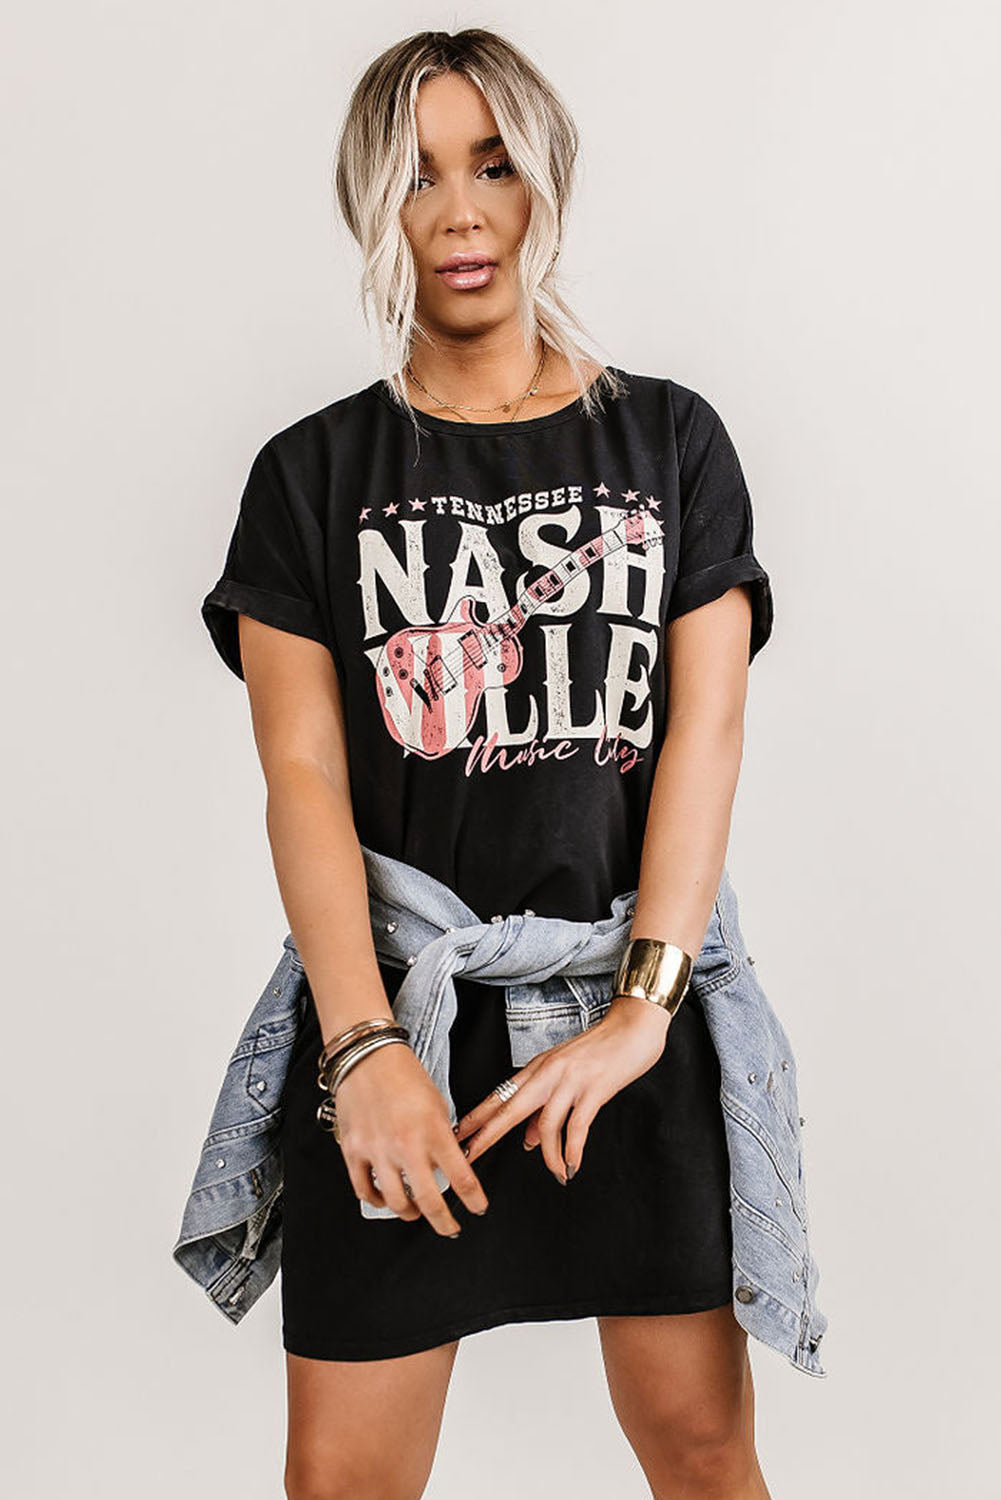 NASHVILLE T-SHIRT DRESS